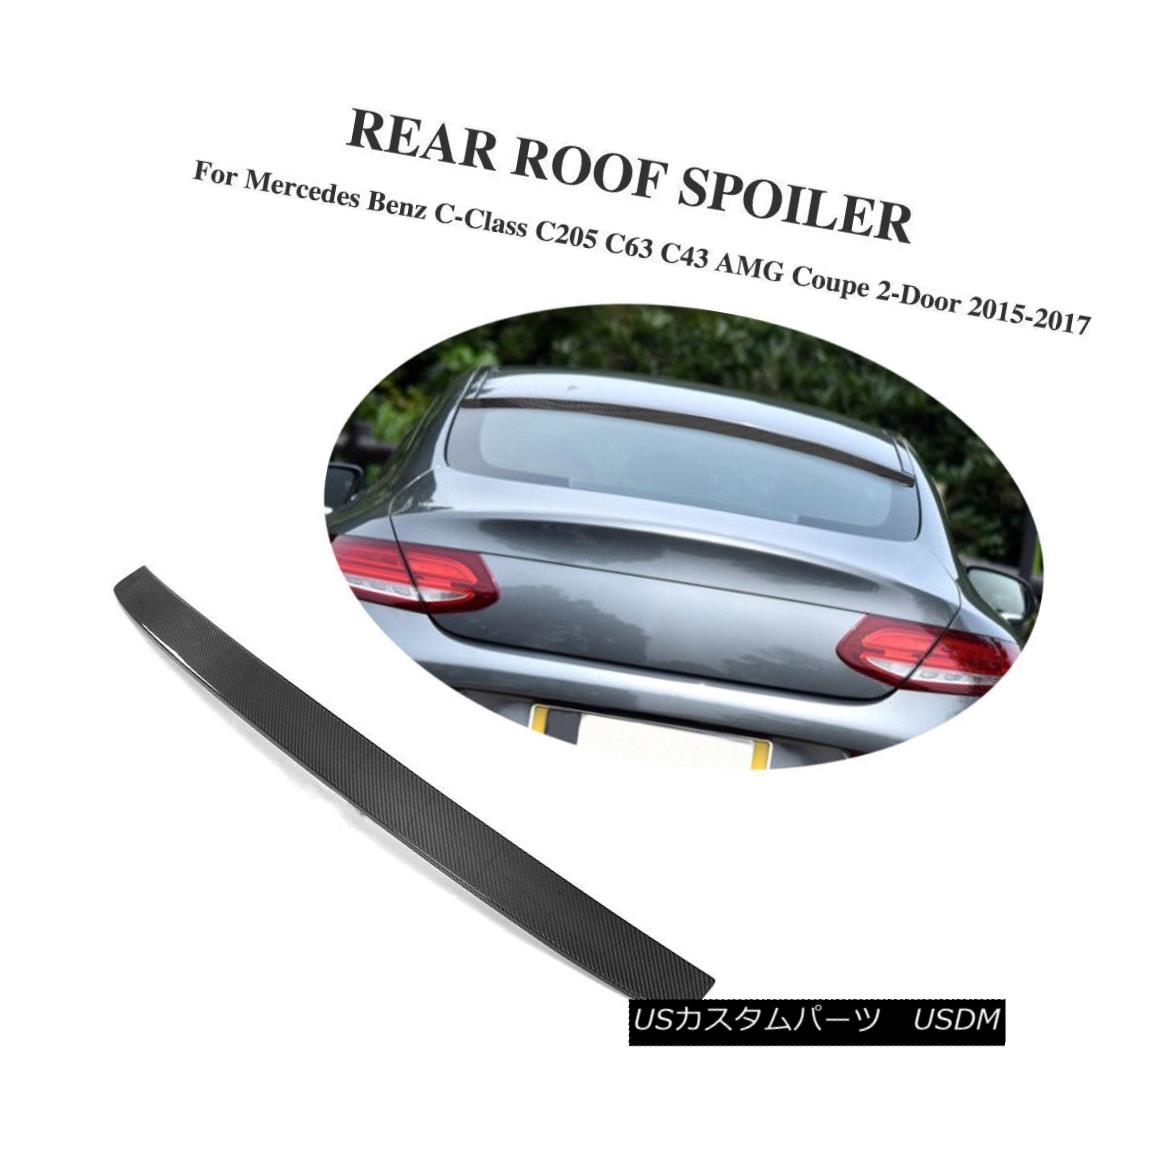 エアロパーツ Carbon Fiber Rear Window Roof Spoiler For Mercedes Benz C205 C63 C43 Coupe メルセデスベンツC205 C63 C43クーペのための炭素繊維のリアウィンドウルーフスポイラー